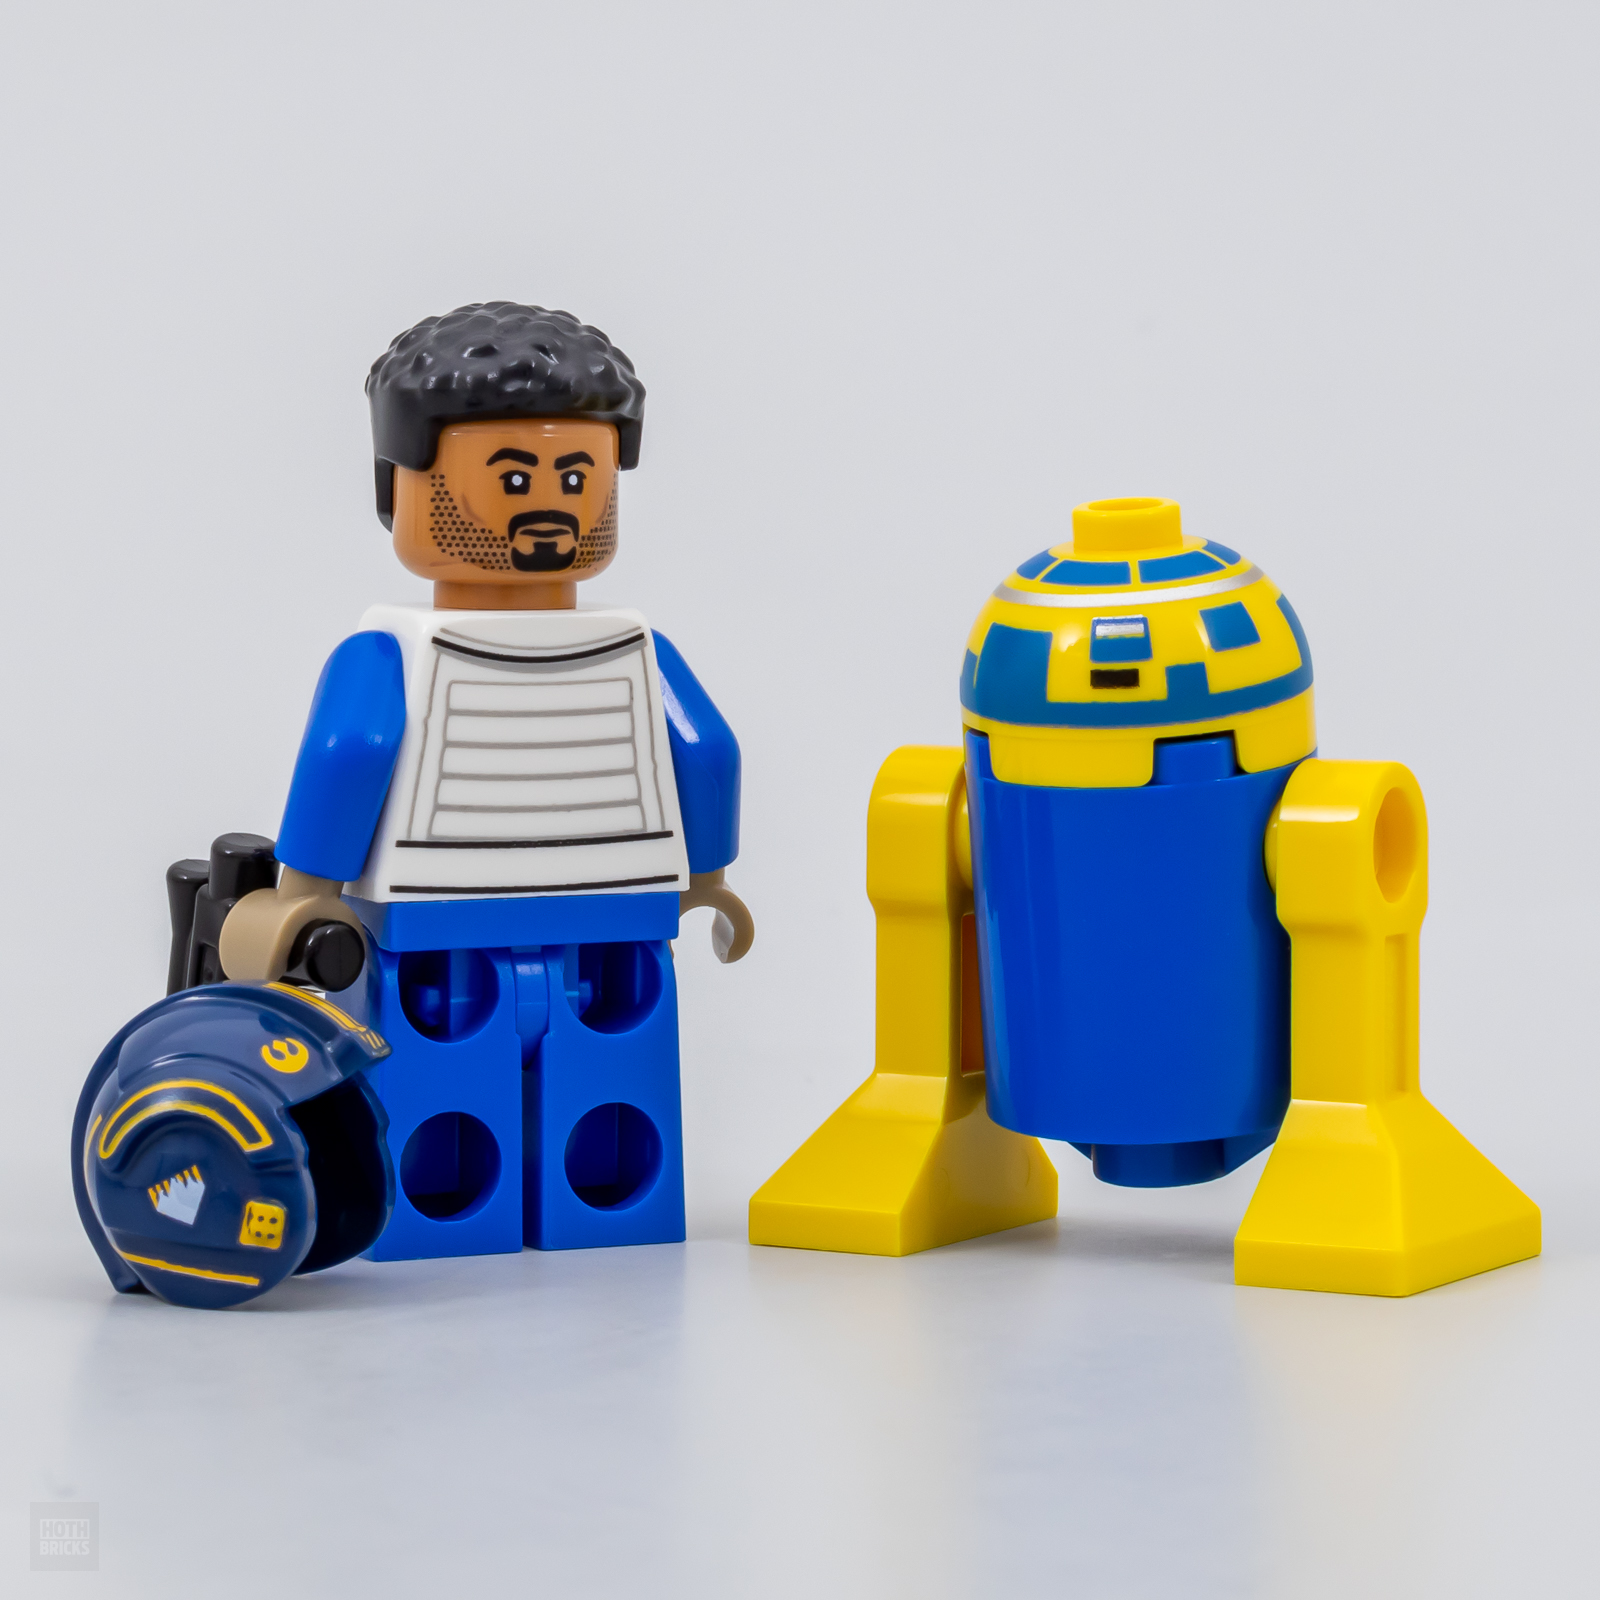 Promo Lego Star Wars : Bons plans et réductions prix pas cher